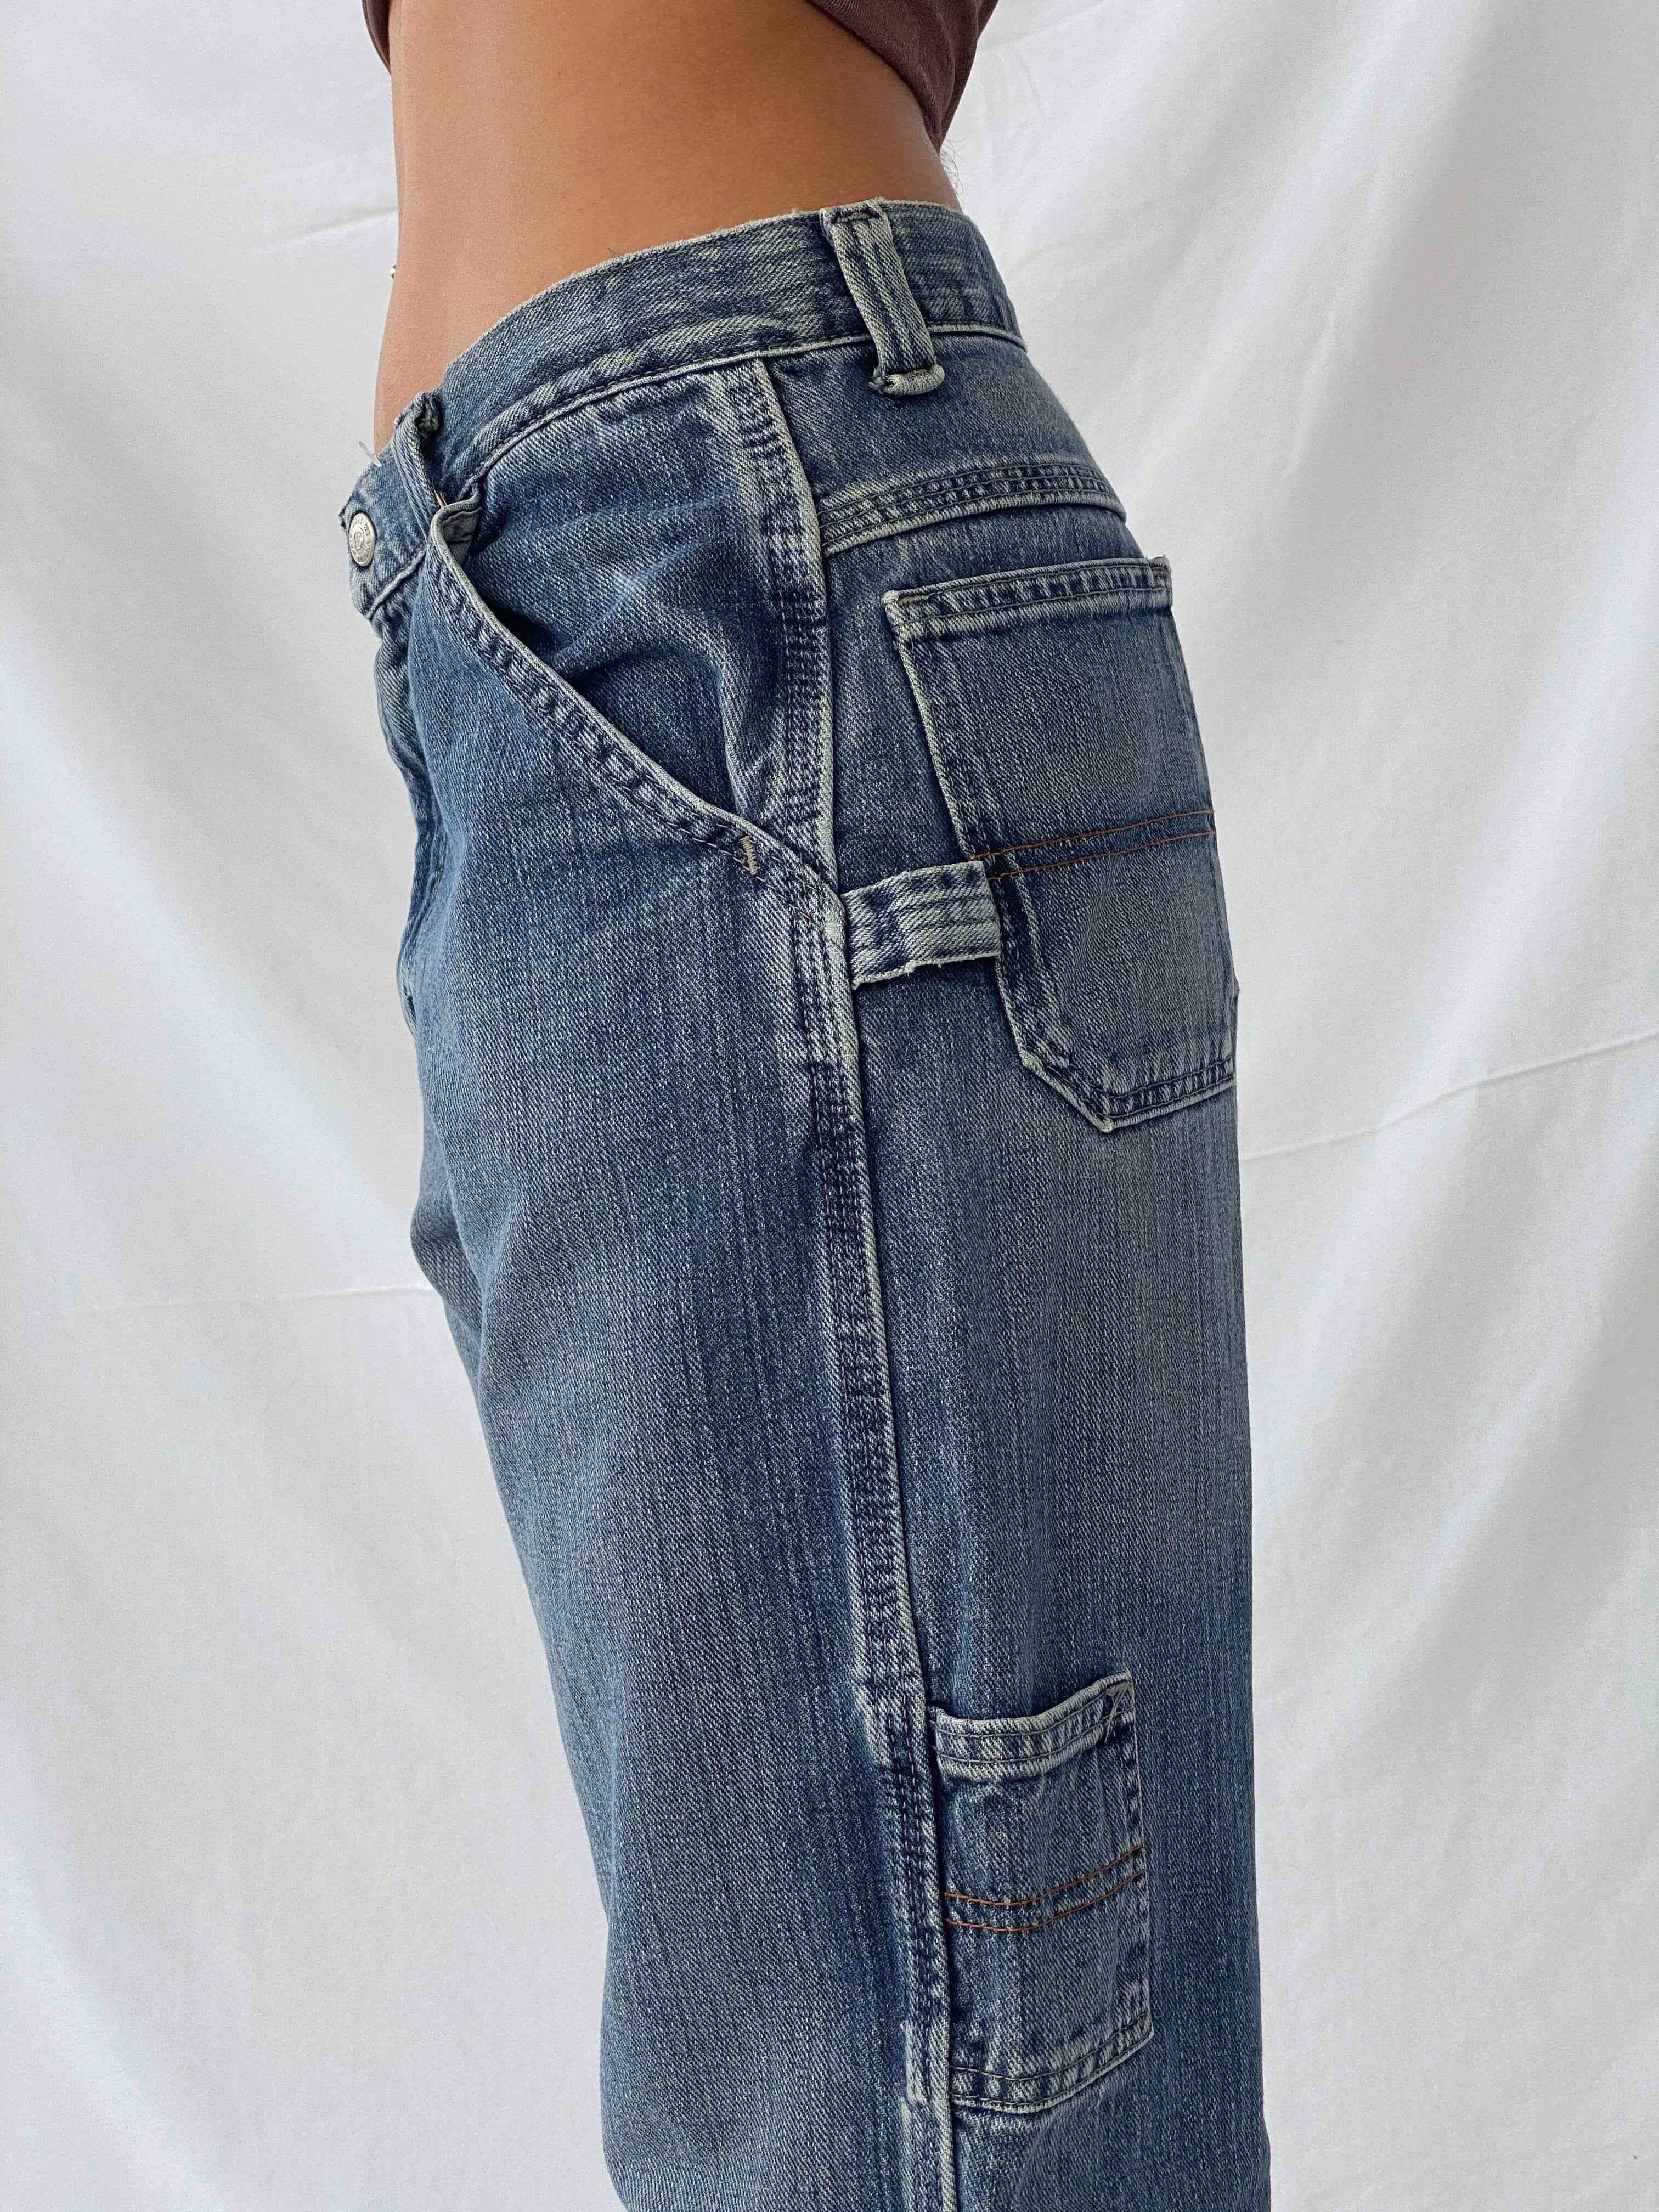 Vintage Wrangler Originals Jeans - Balagan Vintage Jeans 90s, jeans